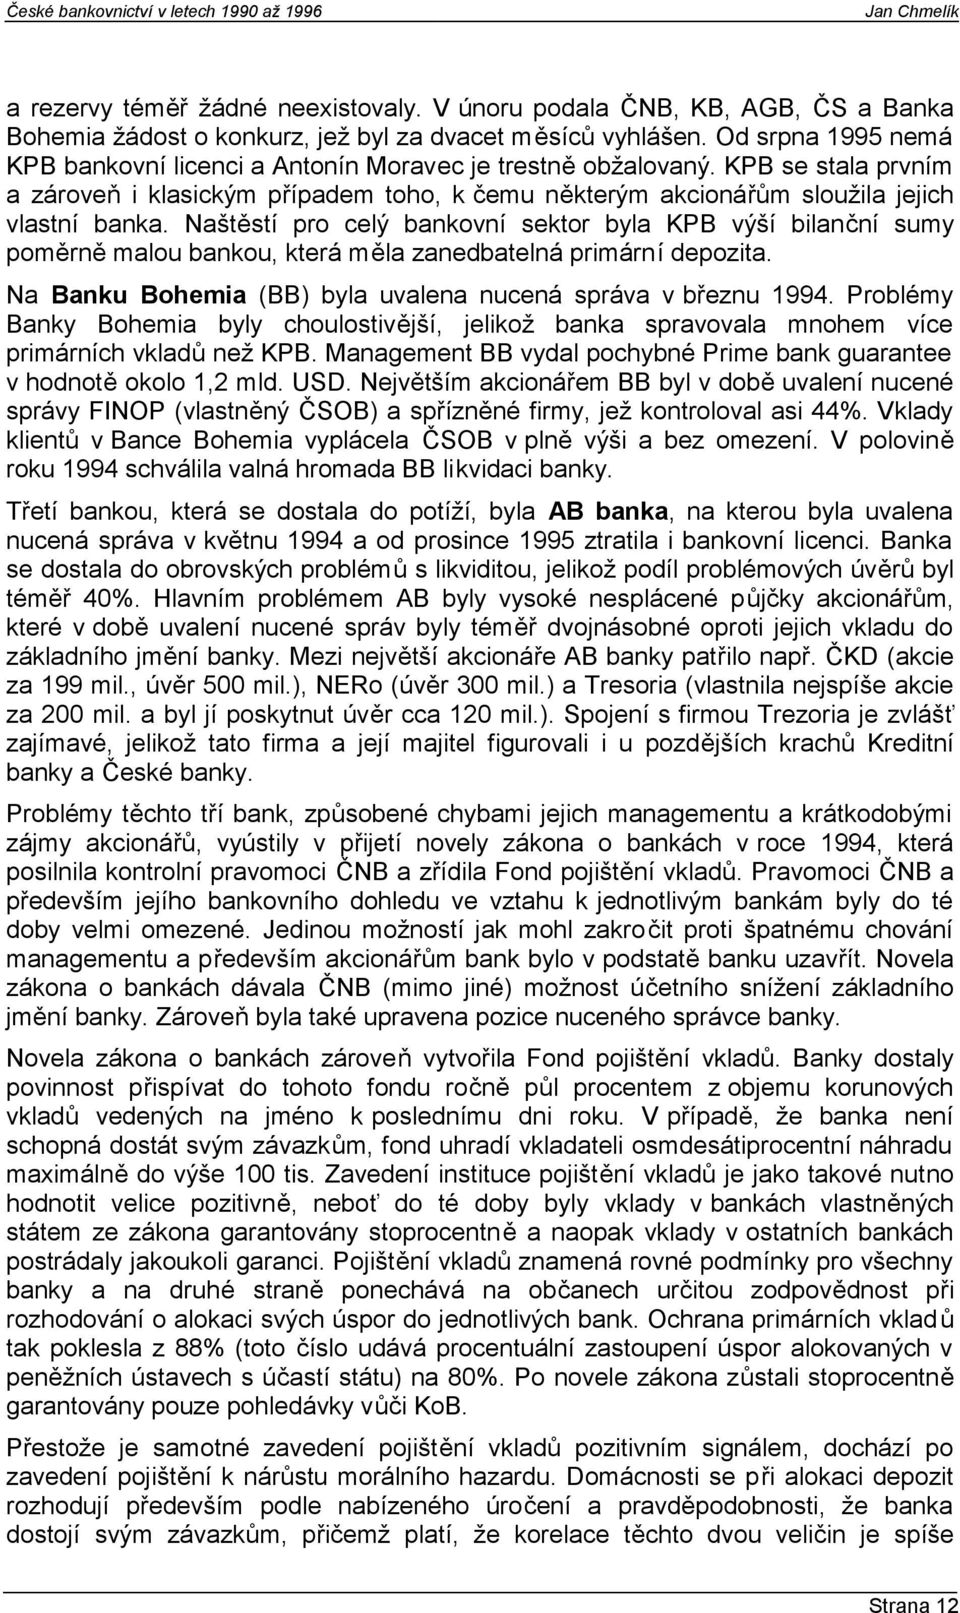 Naštěstí pro celý bankovní sektor byla KPB výší bilanční sumy poměrně malou bankou, která měla zanedbatelná primární depozita. Na Banku Bohemia (BB) byla uvalena nucená správa v březnu 1994.